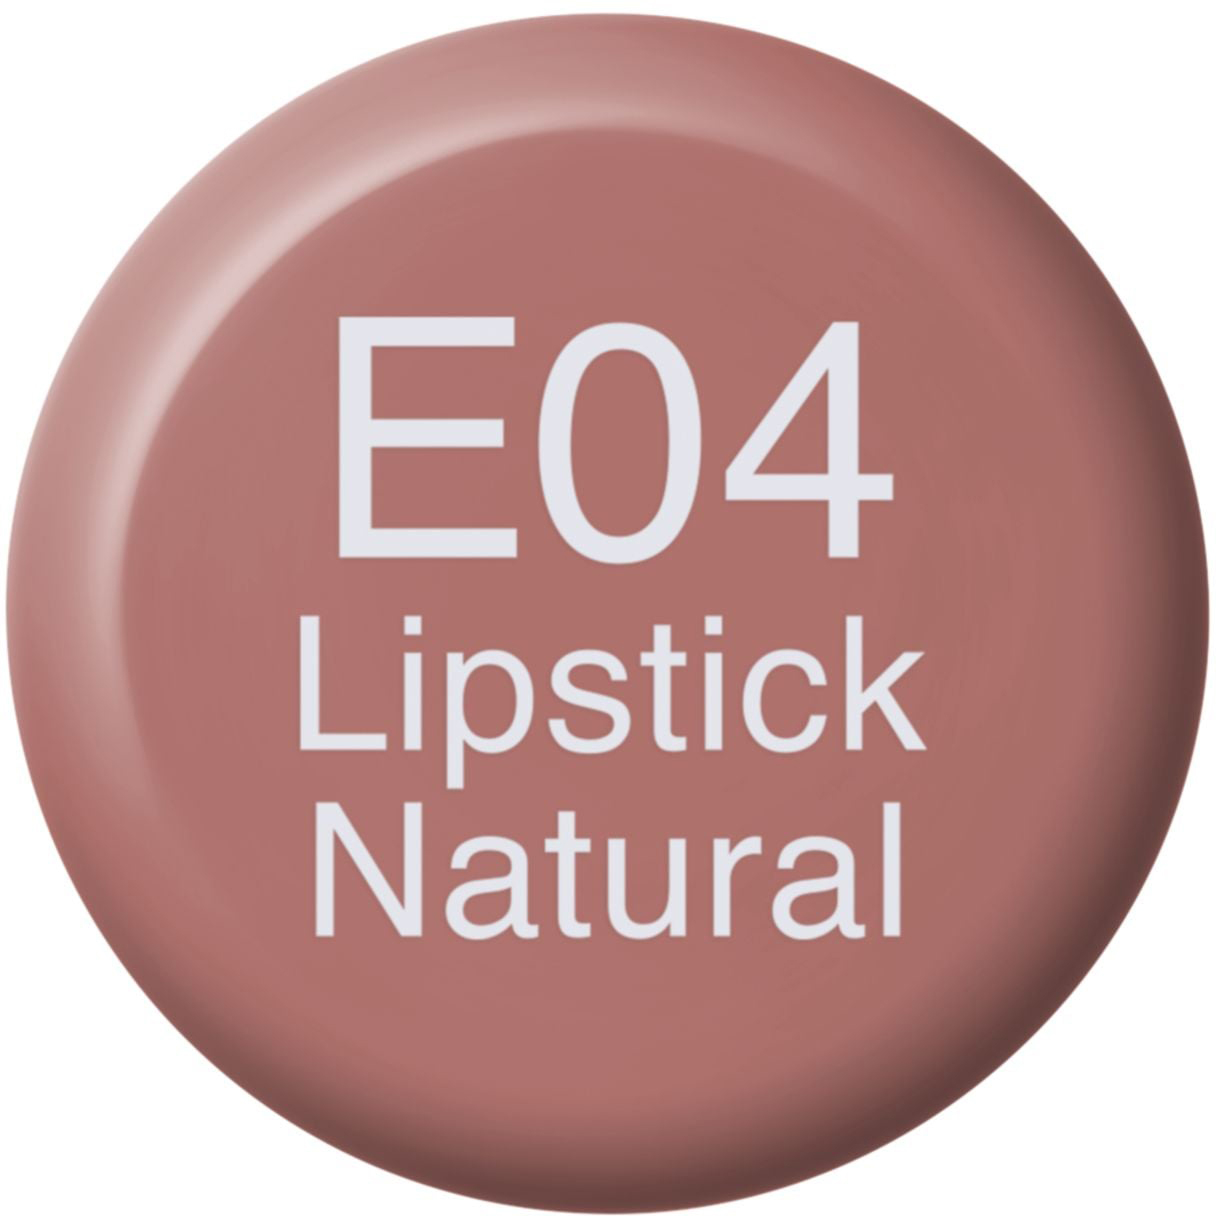 COPIC Ink Refill 21076124 E04 - Lipstick Natural E04 - Lipstick Natural